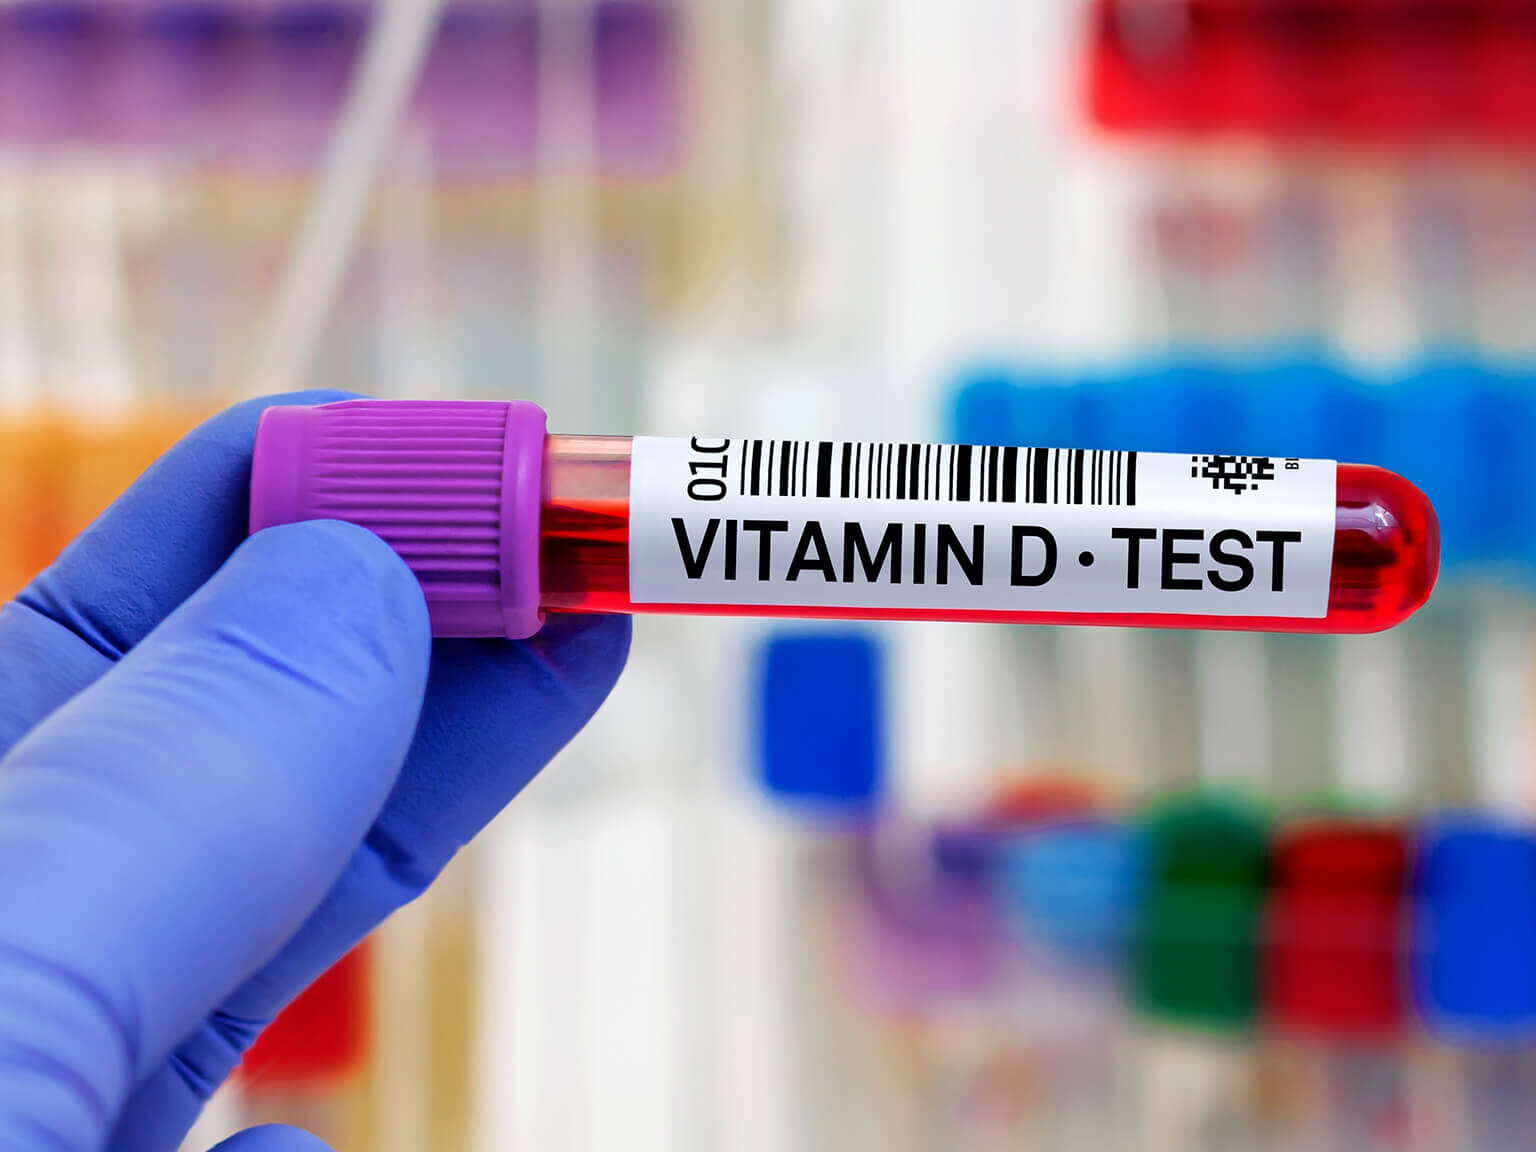 Laborprobe mit Vitamin-D Test Aufschrift